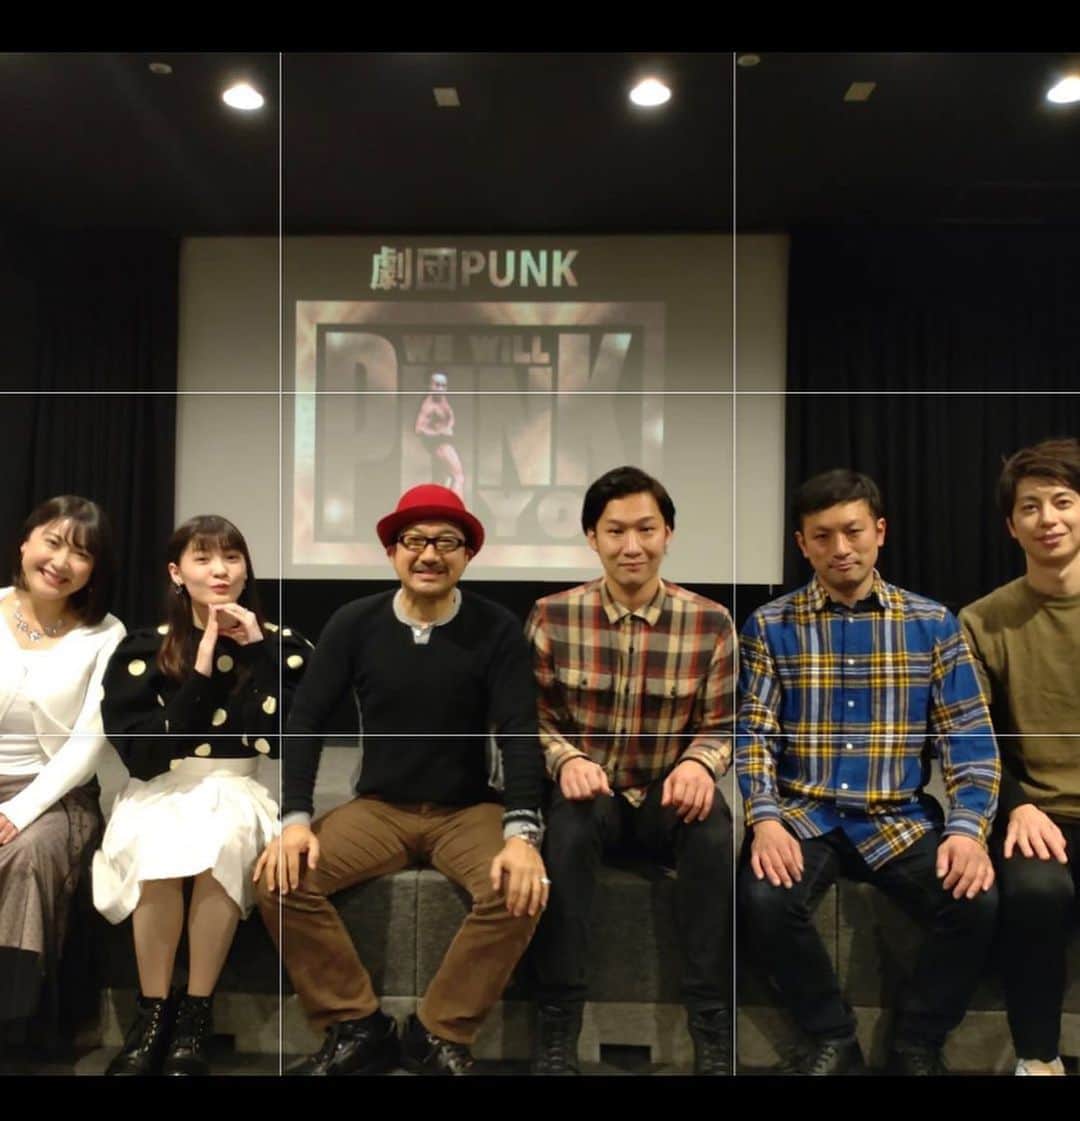 ジェット菅原のインスタグラム：「『劇団punk』  2016年に矢野・兵動の矢野さんが立ち上げた劇団（ #劇団punk )  ぼくが初めて参加させてもらったのは2019年でした。  この最初の写真は昨年の年末に行われた劇団punkの公演後に撮影したものです。  この日のメンバーは、矢野・兵動 矢野さん、ミライスカートの児島真里奈さん、スターダスト所属の横堀菜々美さん、俳優の大西ユースケ さん、同期のムチャクチャヤンへらい、ジェットスガワラ。  この日の公演を同期の河本くんが観に来てくれていました。  河本くんとは5年ほどルームシェアをしていて、色々と切磋琢磨した仲間でした。  数年前に芸人の活動を辞め、脚本家の道に進みました。  　　 公演終わり、河本くんとみんなで喋っているところに矢野さんがきて、初対面の河本くんに脚本家なんやったら今度のpunkの脚本も書いてや！と提案をしてくれました。  そうして河本くんを脚本にむかえて次の公演をやる形となりました。  個人的にめちゃくちゃアツイ展開だと思っています。  そしてヨシカツ！（大西ユースケさん、ムチャクチャヤンへらい、ぼくの3人でやっている映像ユニット 大西ユースケさんのインスタで動画観れます）のメンバーも、この公演で大暴れしたいと意気込んでいます。  パイセンプロデュース劇団PUNK WE WILL PUNK YOU 20231 〜梅雨だから雨季雨季バラエティーショウ!!～」 開催日 2023年6月30日（金）  会場　十三シアターセブン  19:00開場/19:30開演  出演者 劇団ＰＵＮＫ選抜メンバー ・矢野勝也（矢野・兵動） ・横堀菜々美 ・大西ユースケ ・ジェットスガワラ ・戸来大ち（ムチャクチャヤン） ほか  【会場観覧】 　前売 3,000円／当日 3,500円  ※チケットはジェットスガワラなど出演者に直接DMで取り置きも頼めます！　 名前と枚数をお伝えください。  【オンライン視聴】 　2,500円（+100円のお支払手数料が発生します） ※開催日より２週間アーカイブ視聴可 ※一部配信不可な部分がございます。予めご了承願います  詳しくは十三シアターセブンのホームページへ！」